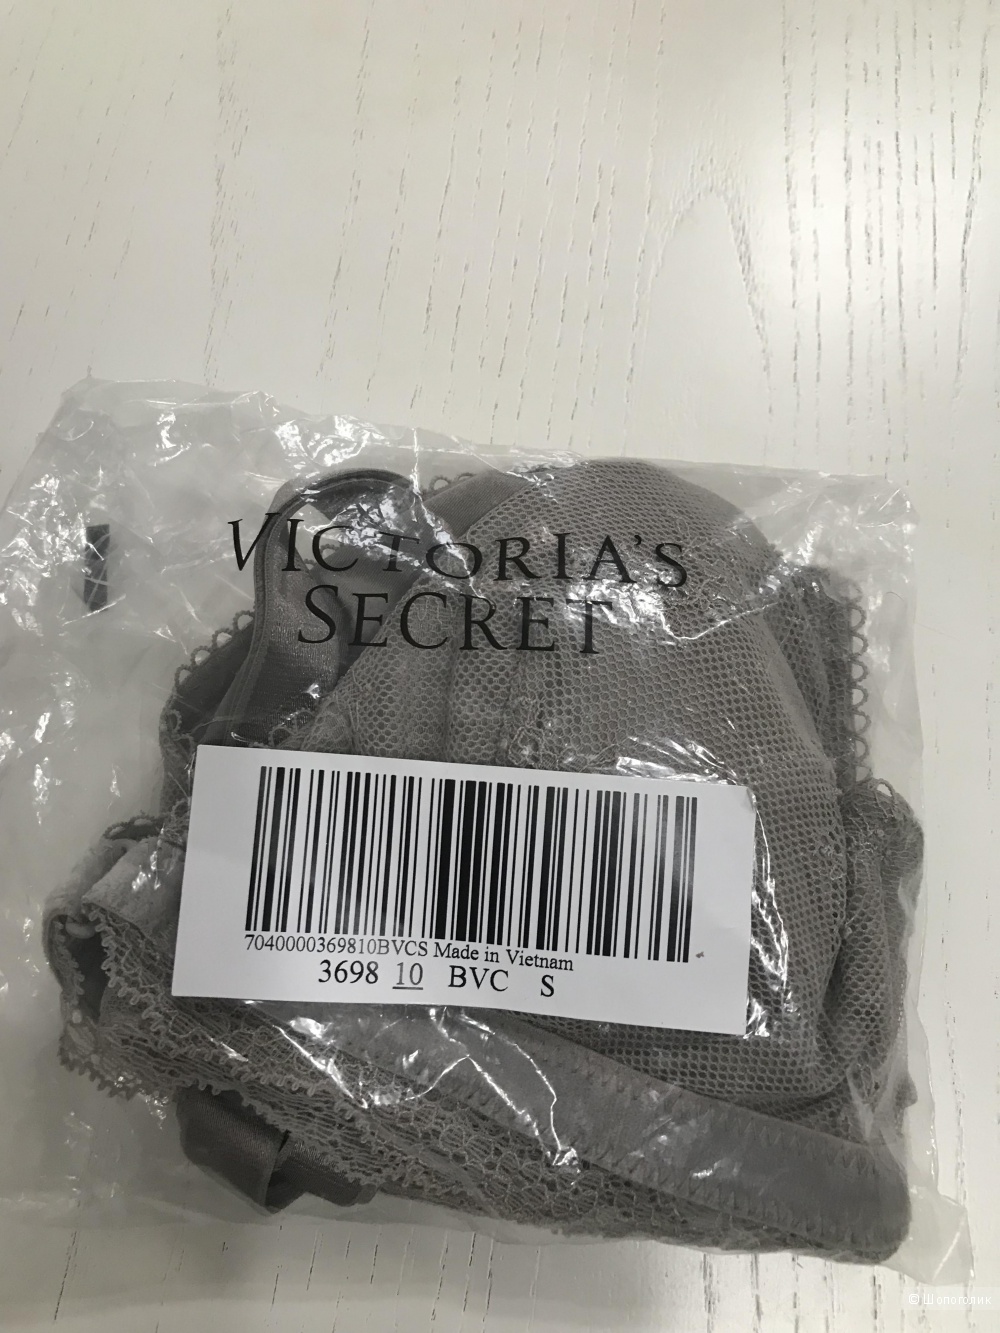 Бралетт от Victoria’s Secret , размер S